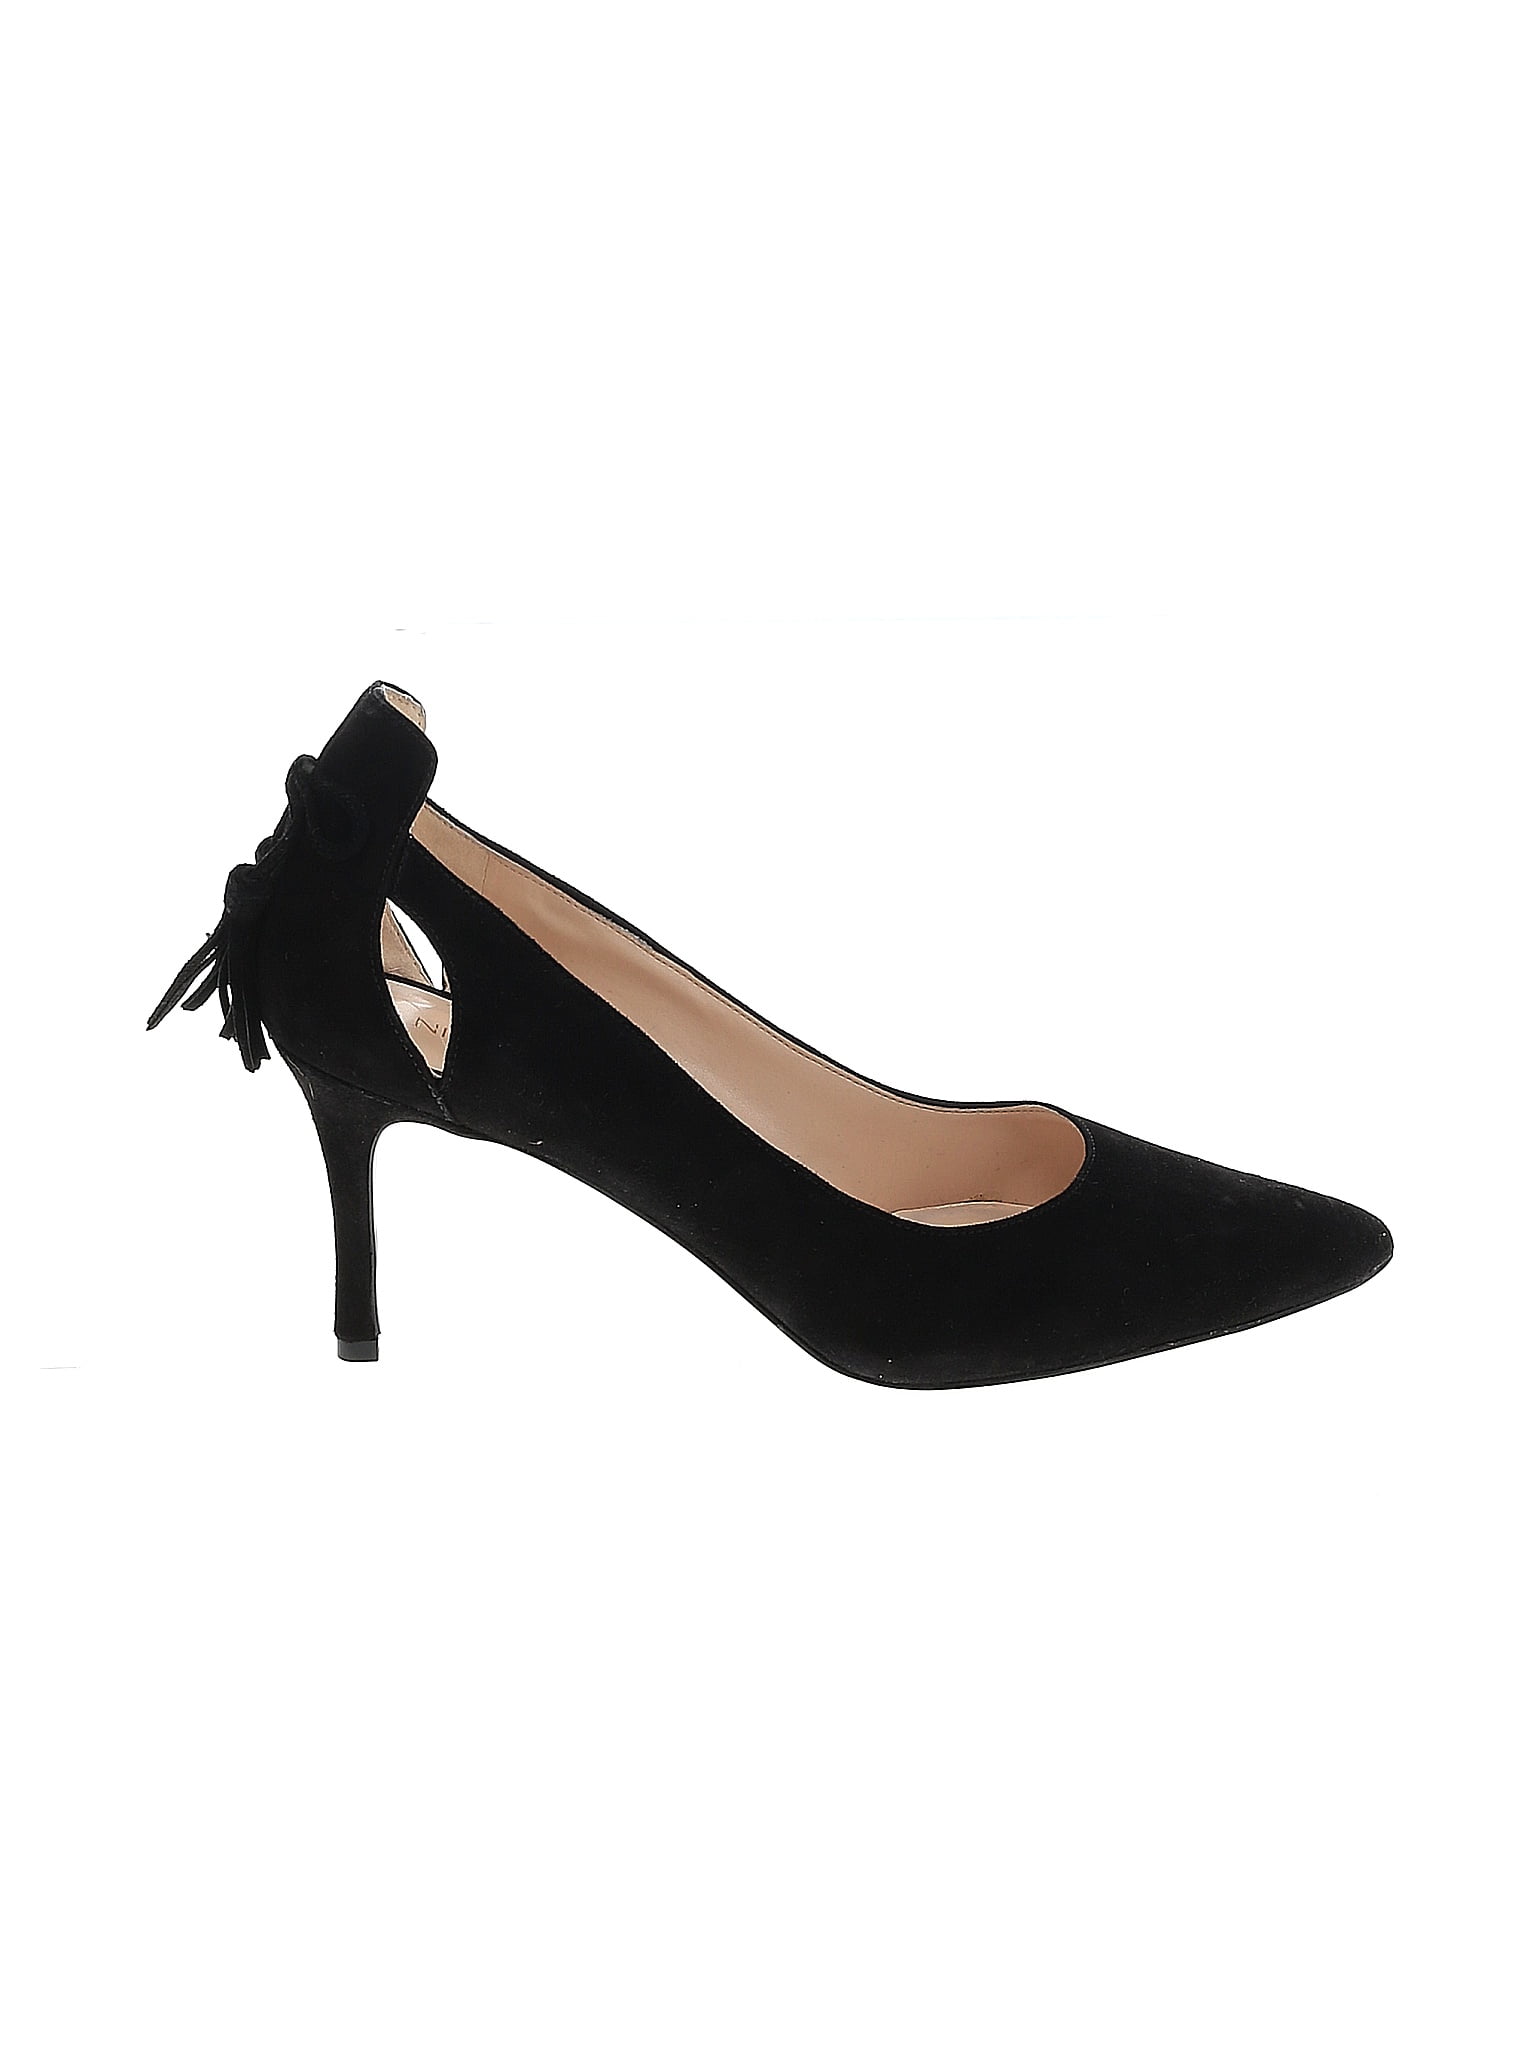 Nine West Solid Black Heels Size 9 1/2 - 68% off | thredUP